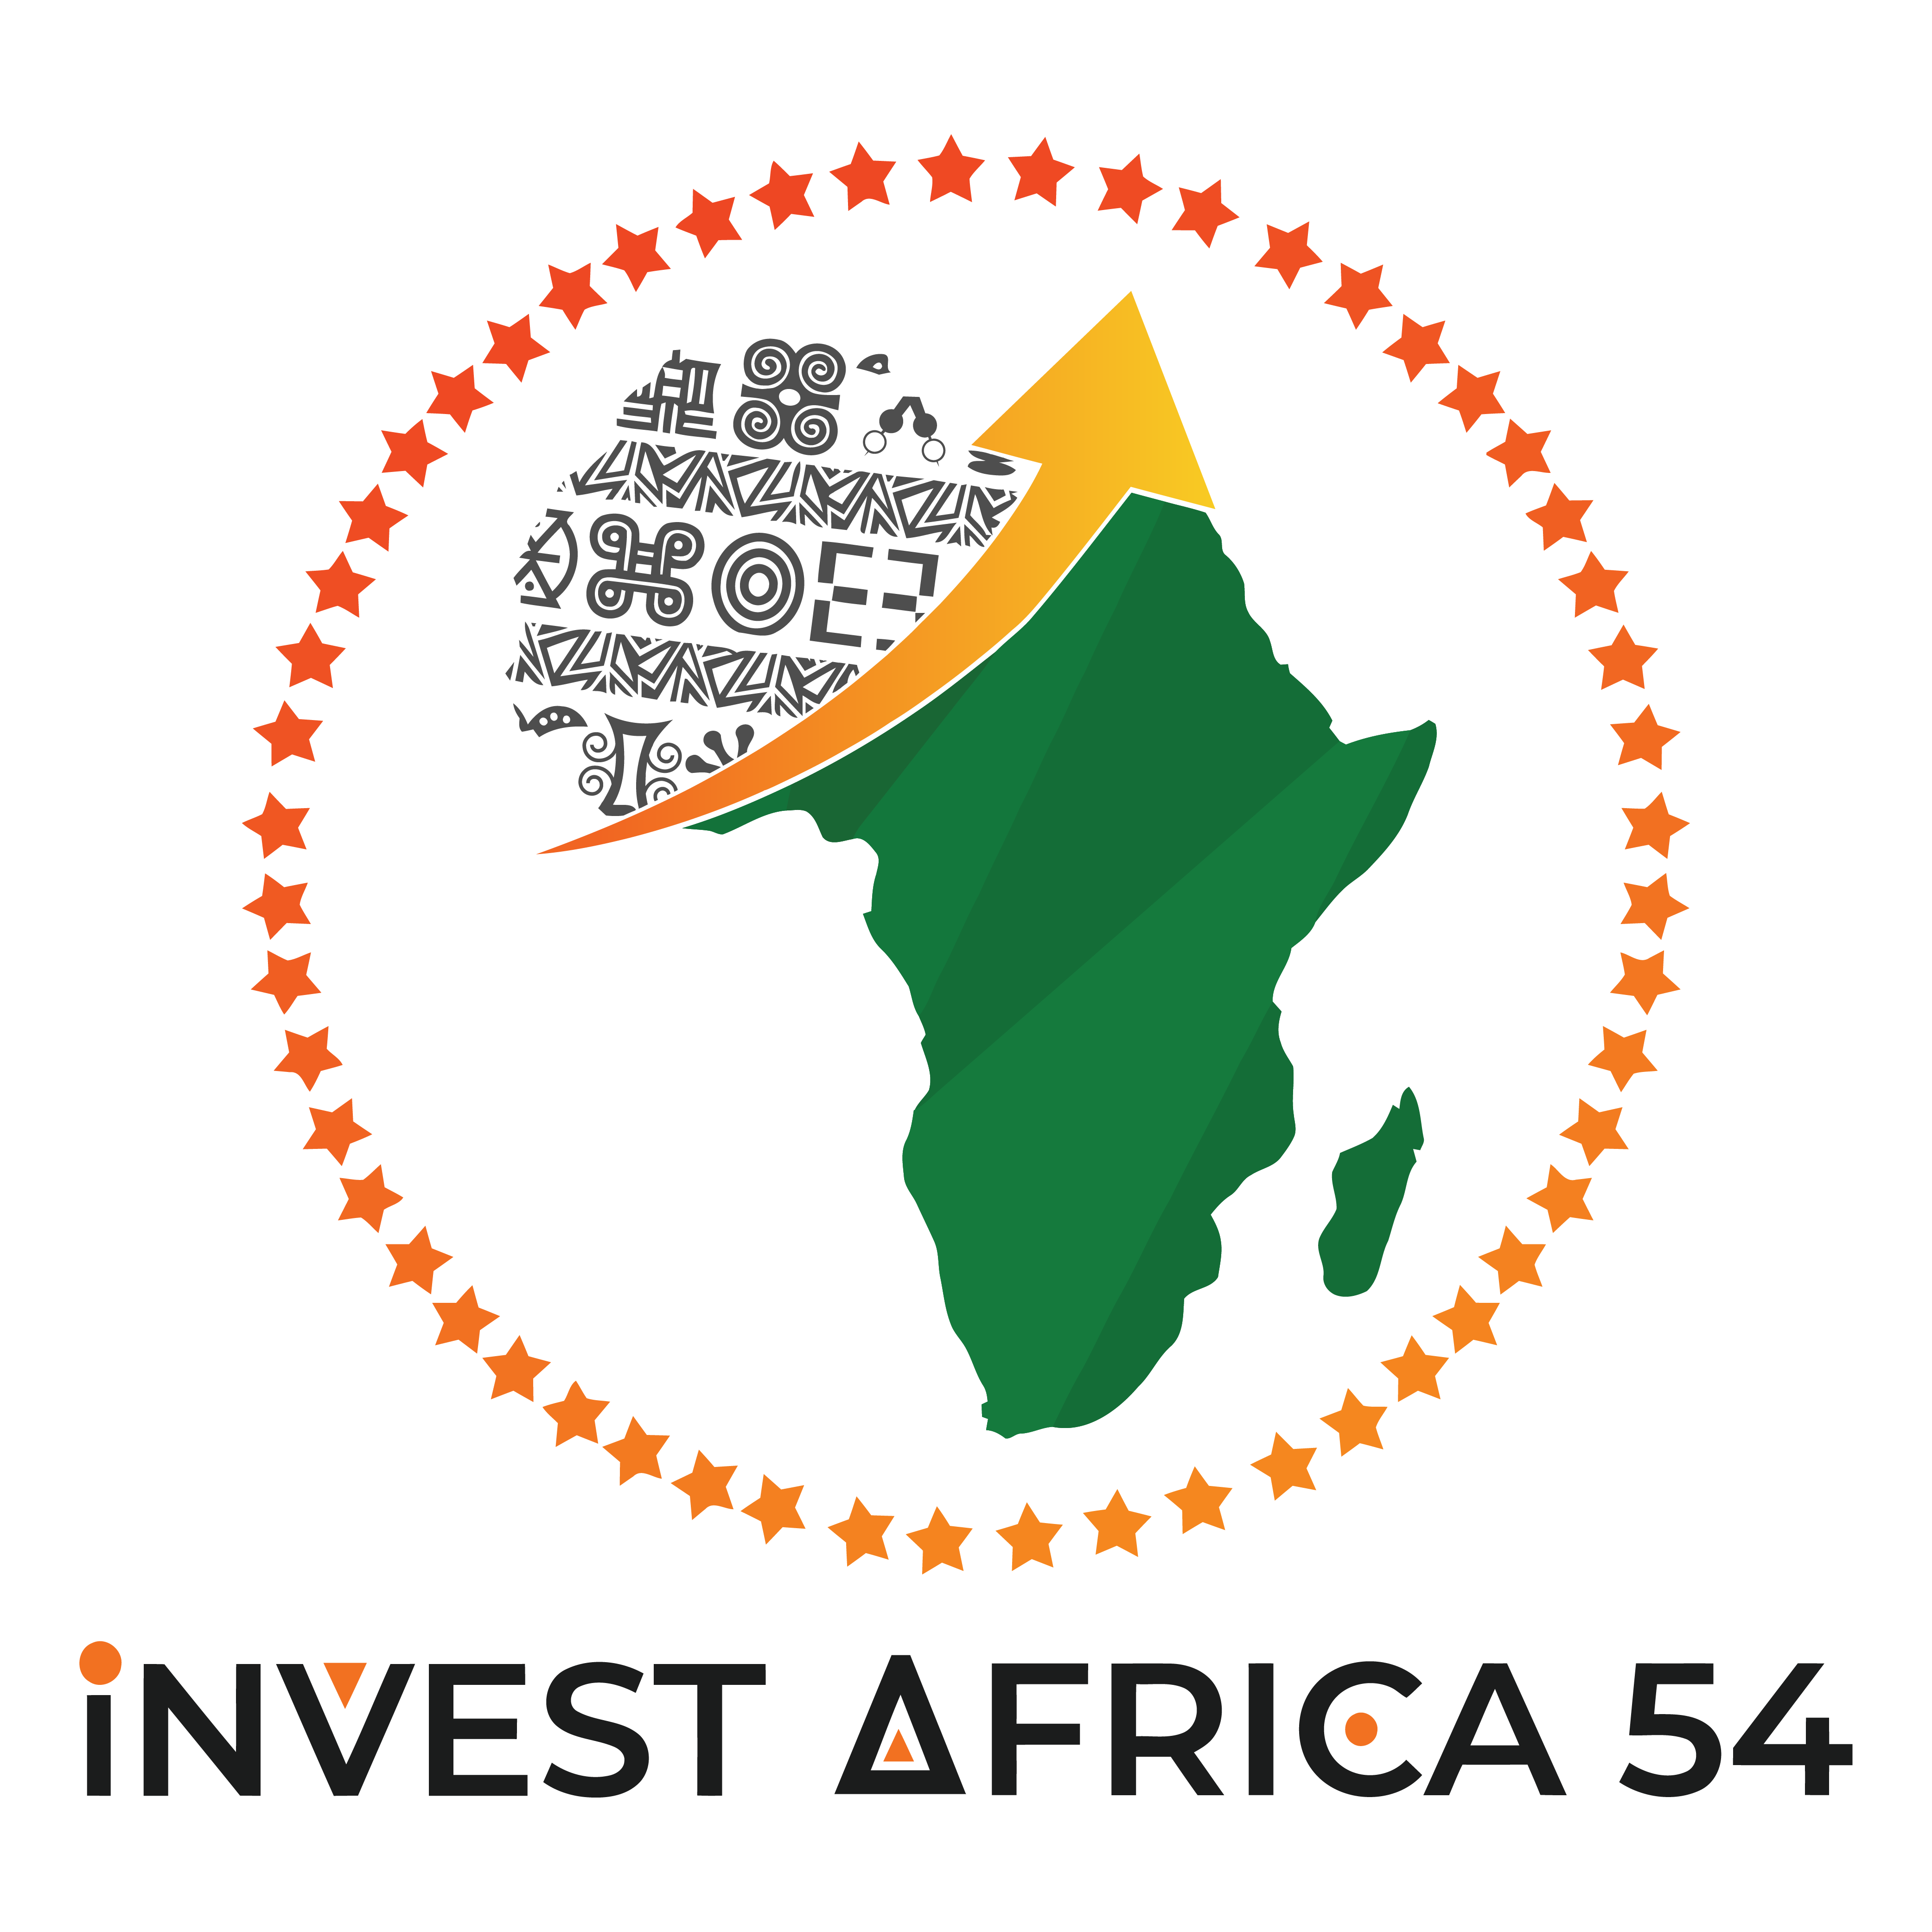 invest africa 54 logo